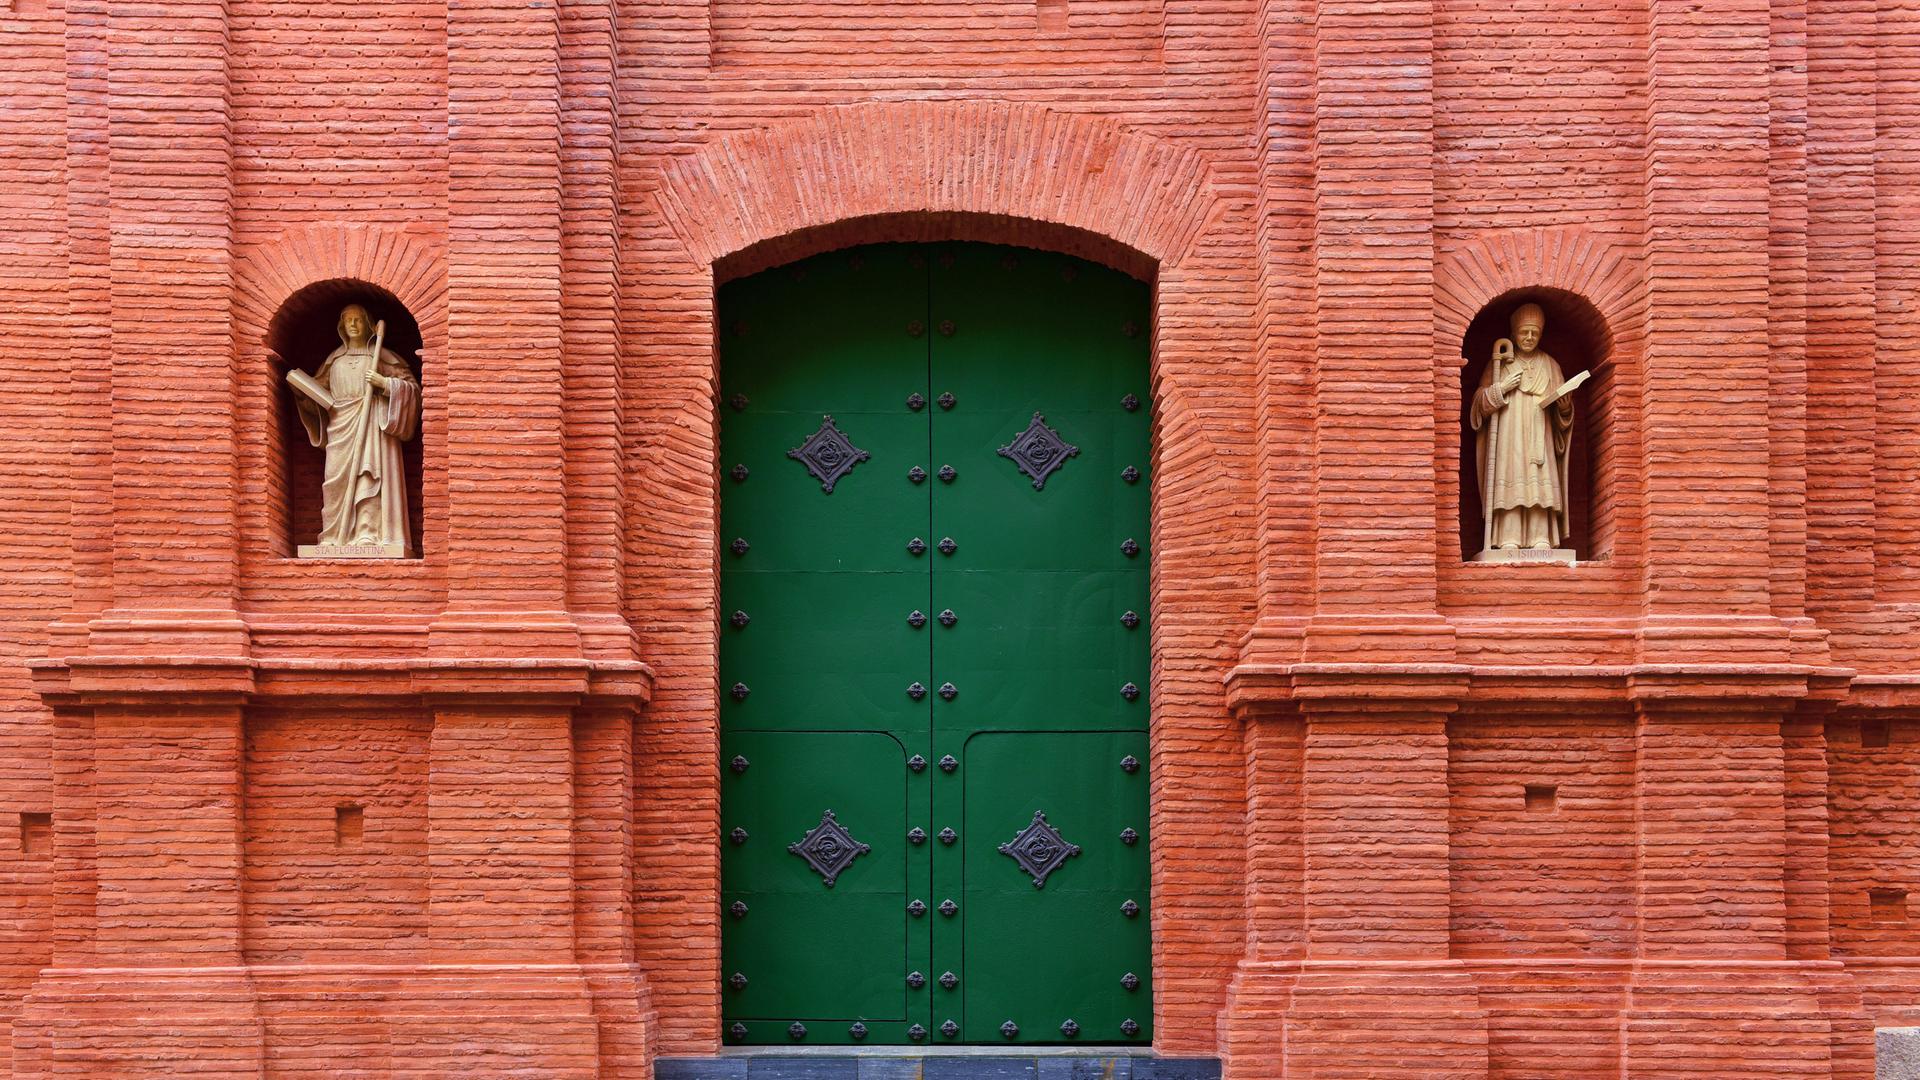 Außenansicht der Kathedrale von Cartagena mit rotem Tor, grüner Tür uns zwei Heiligenfiguren (Symbolbild)